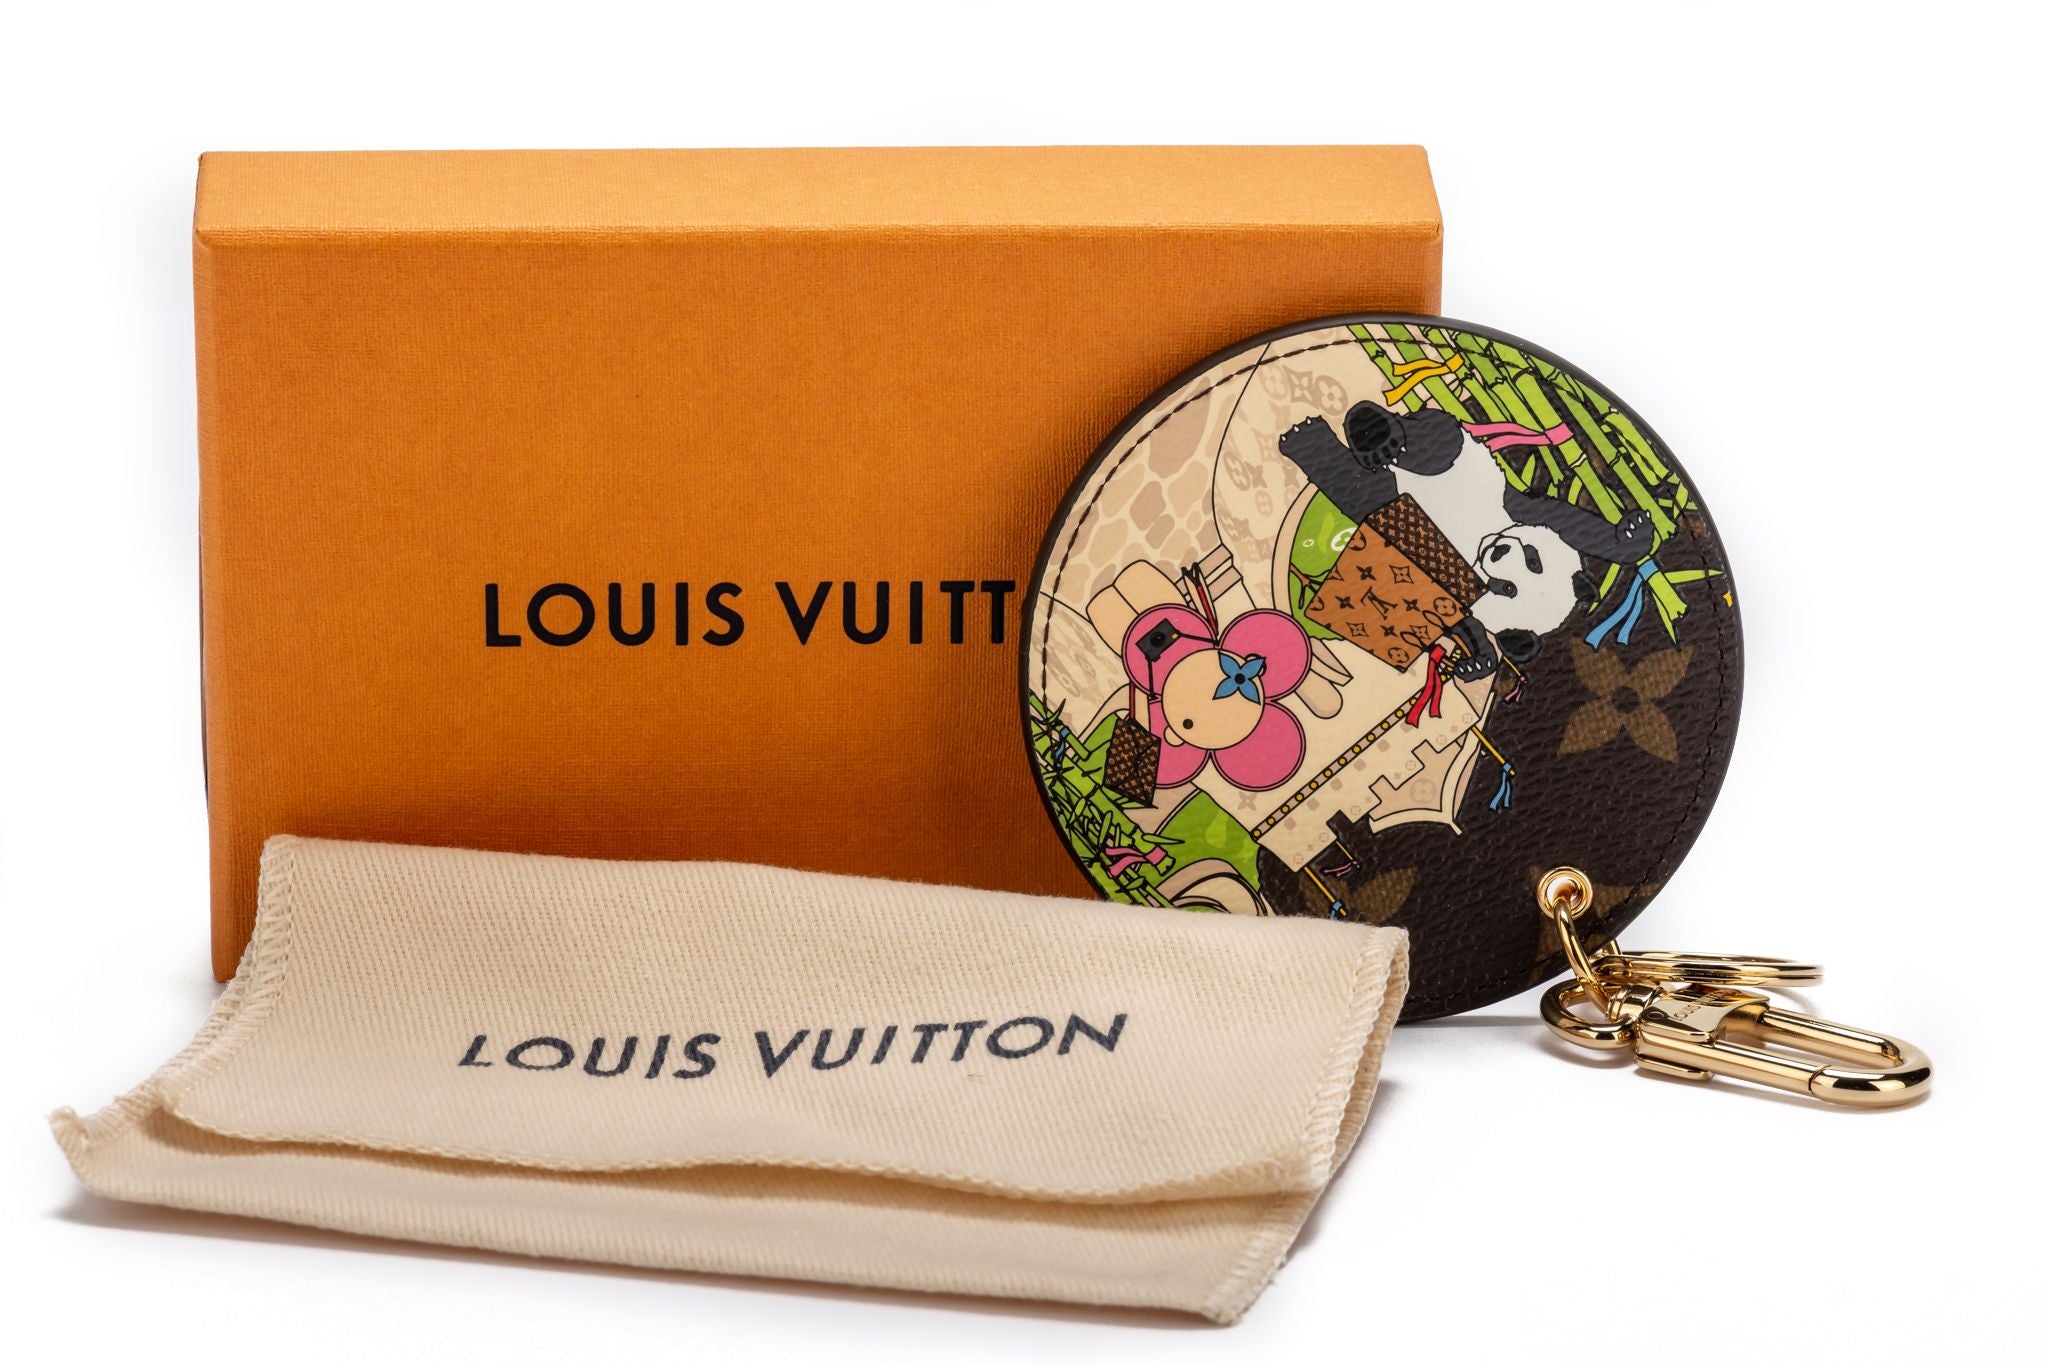 Vivienne Panda pendant by Louis Vuitton, Louis Vuitton